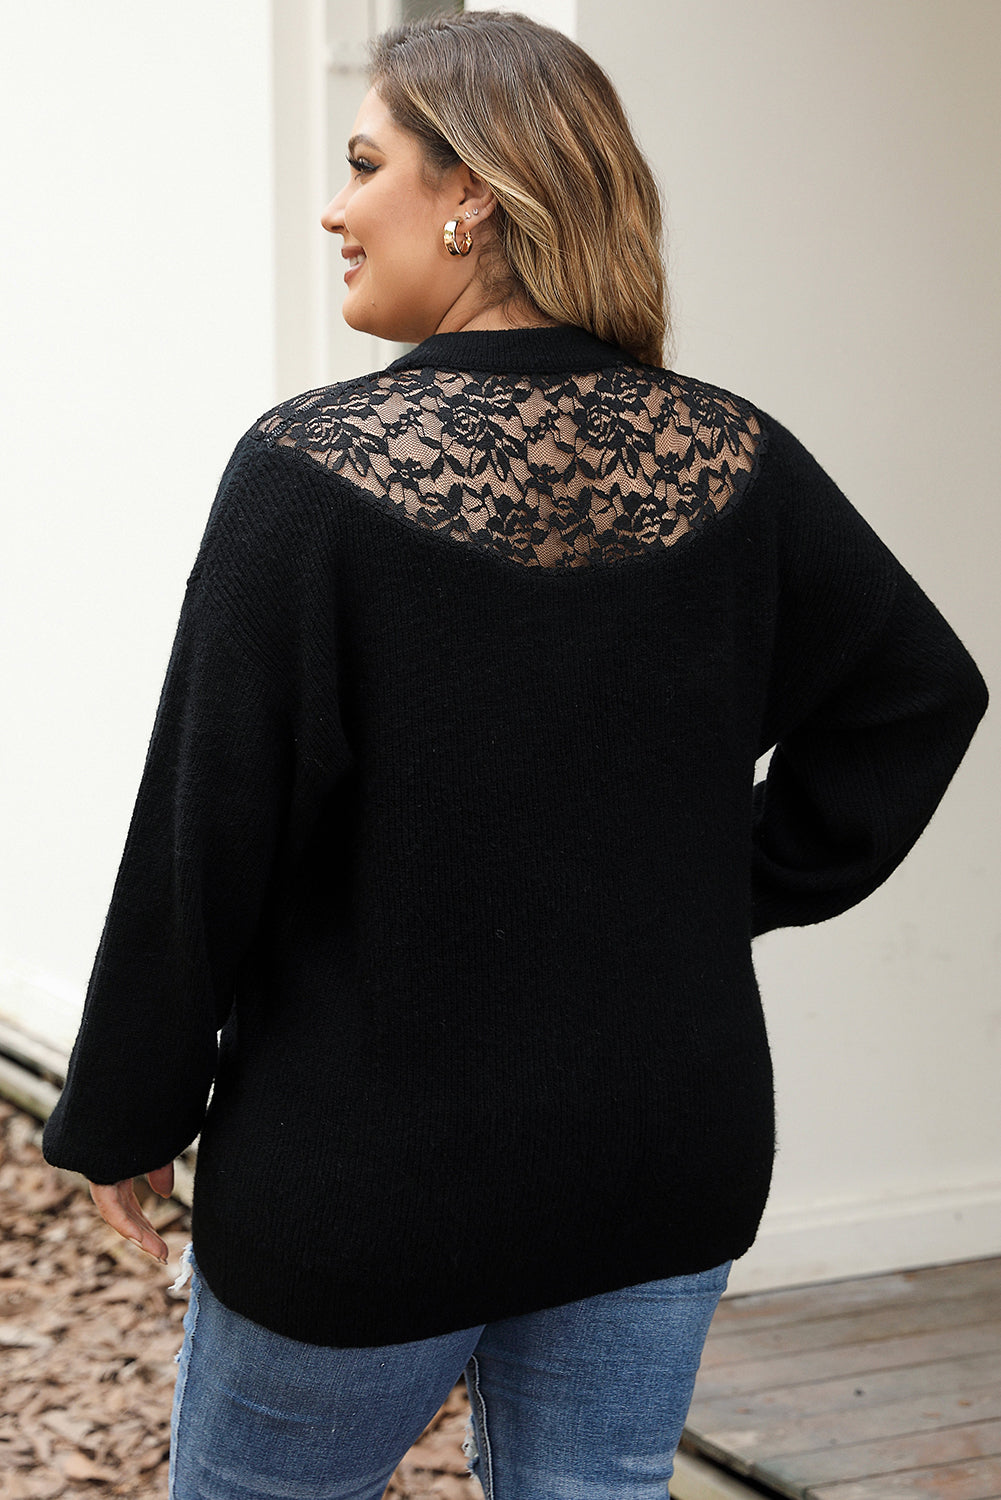 Crni pulover s visokim ovratnikom od rebraste pletene čipke veće veličine